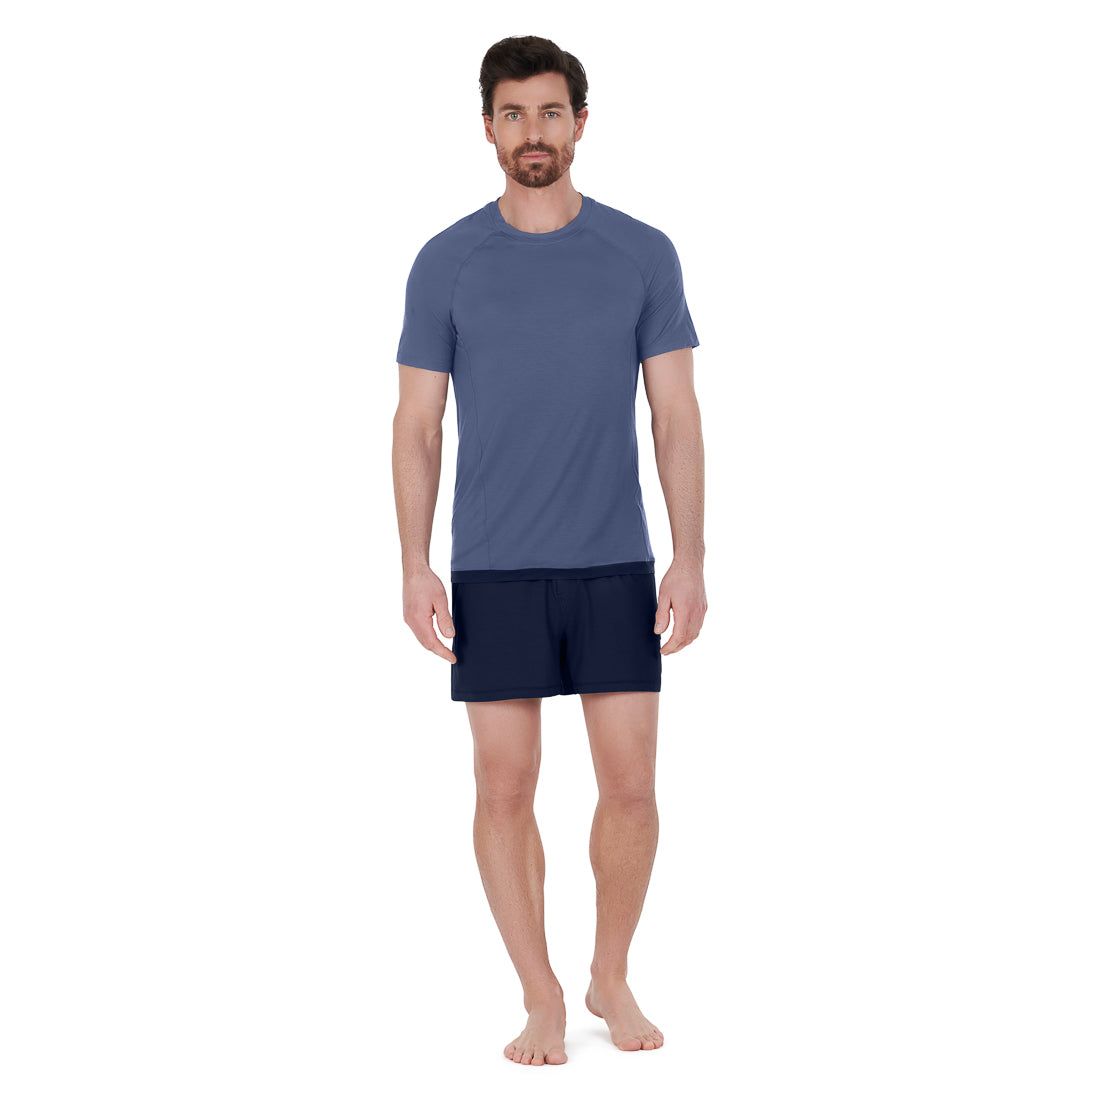 Cooling sleepwear men || Navy blue